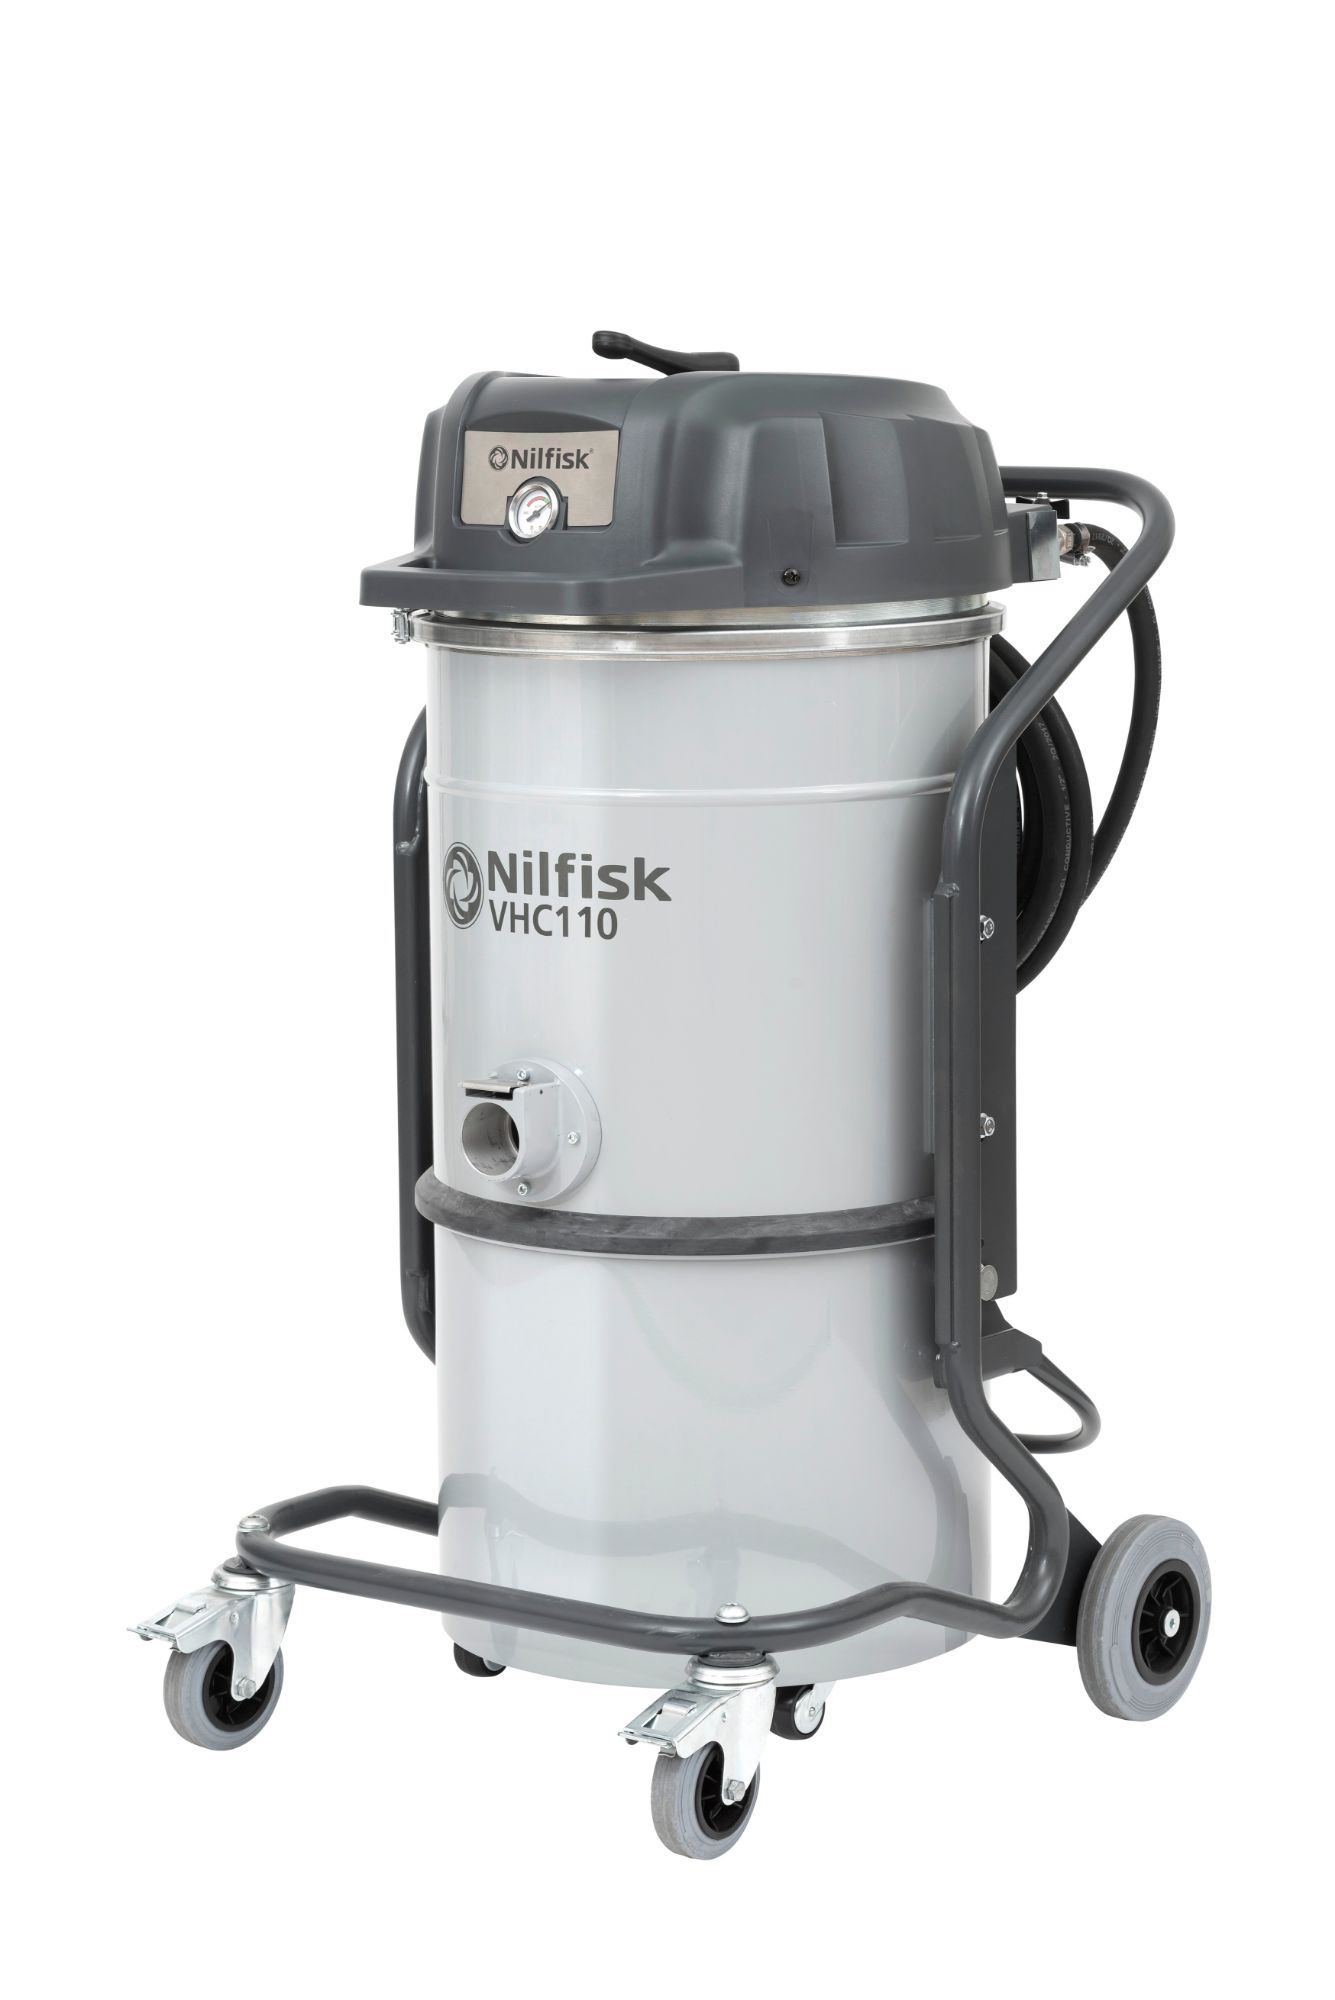 Nilfisk VHC110 Industrial Vacuum